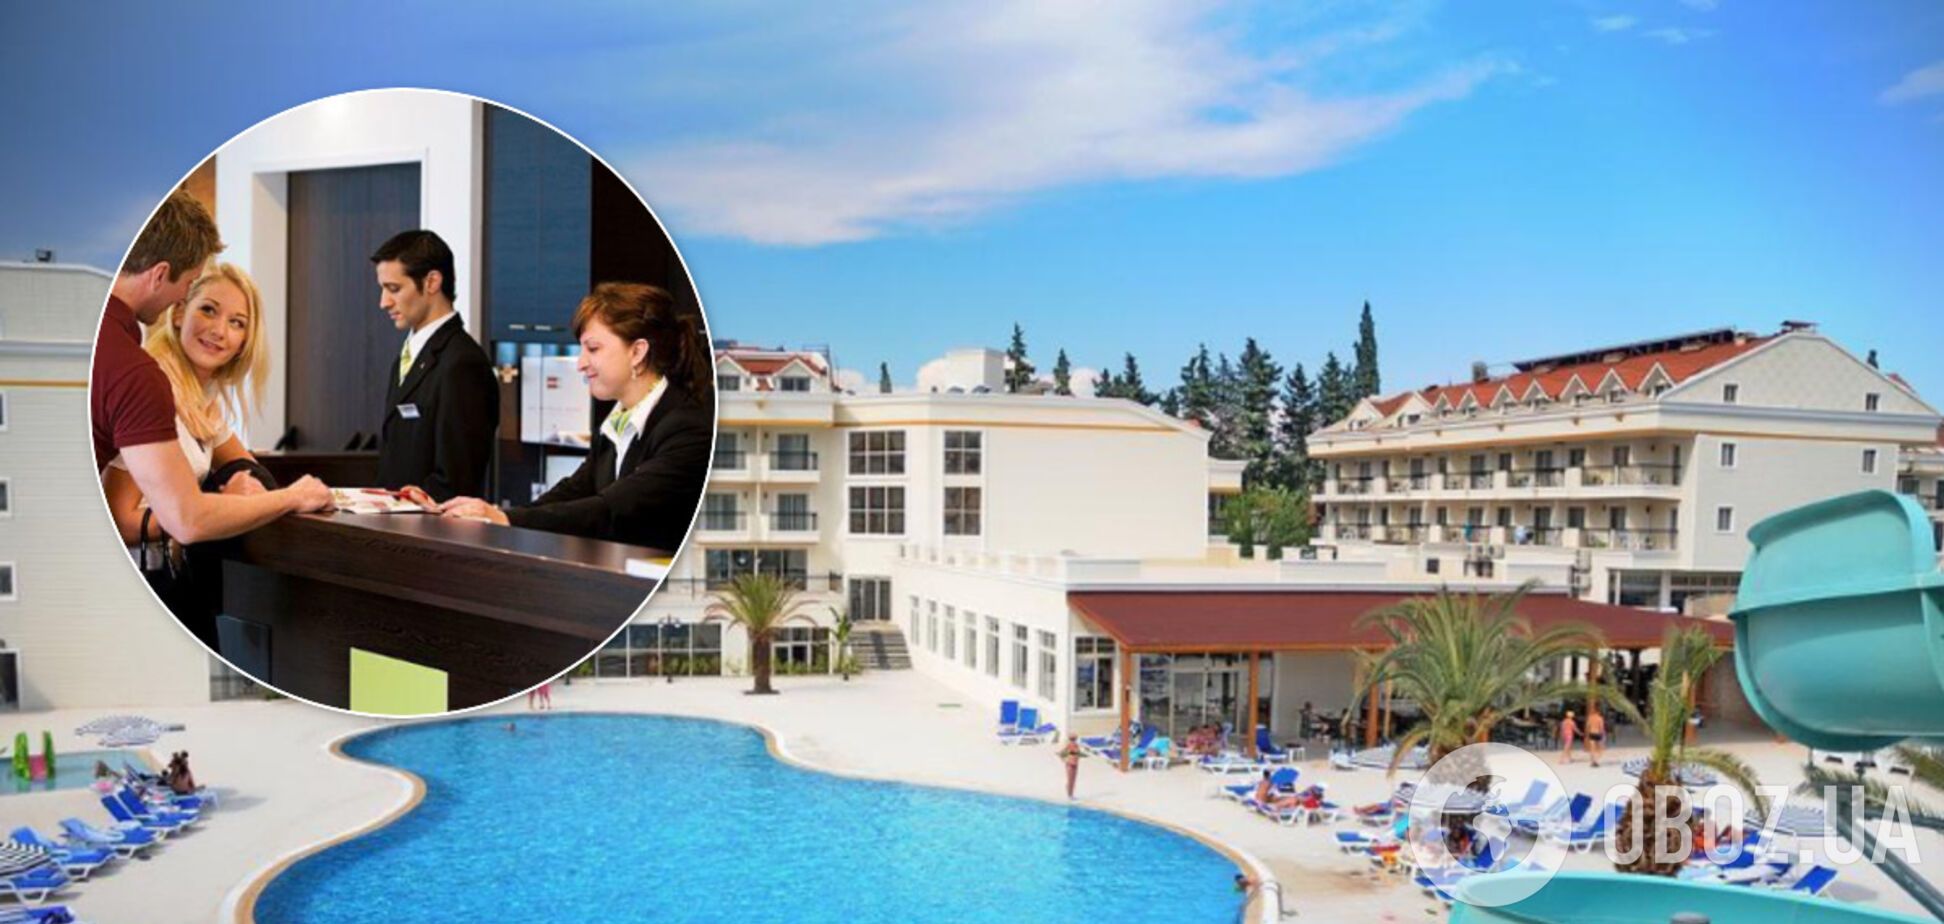 Готелі в Туреччині ведуть обмеження для туристів через коронавірус: подробиці